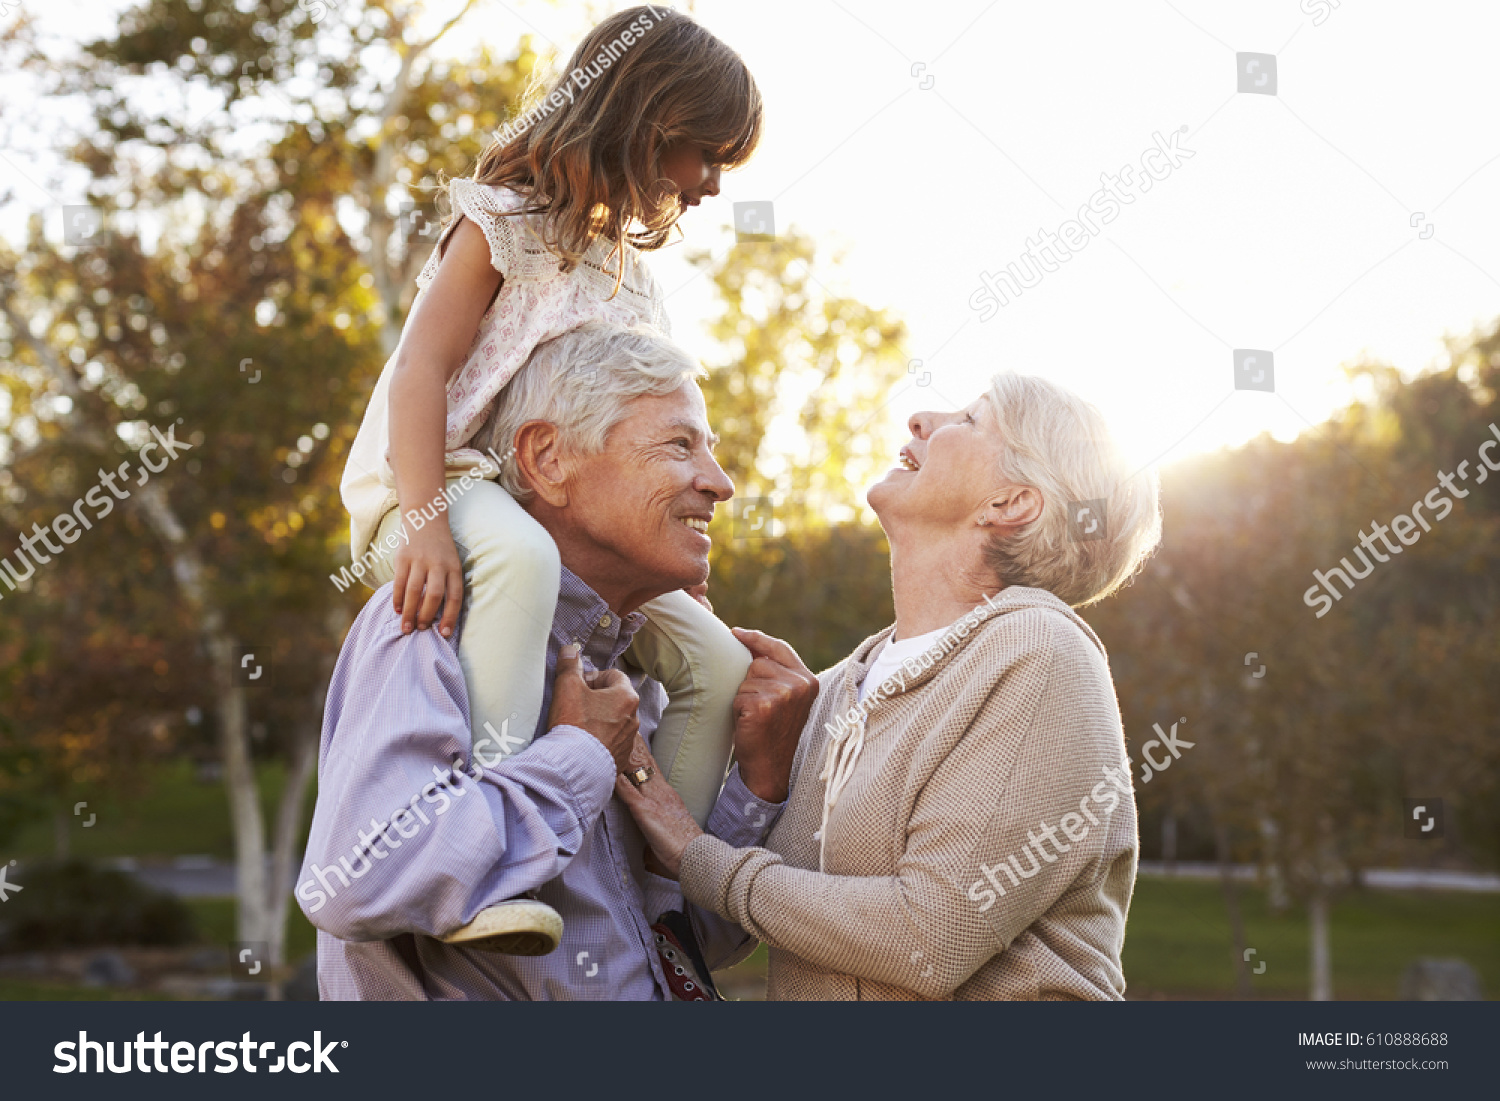 Grandparents Giving Granddaughter A Shoulder Ride In Park #610888688